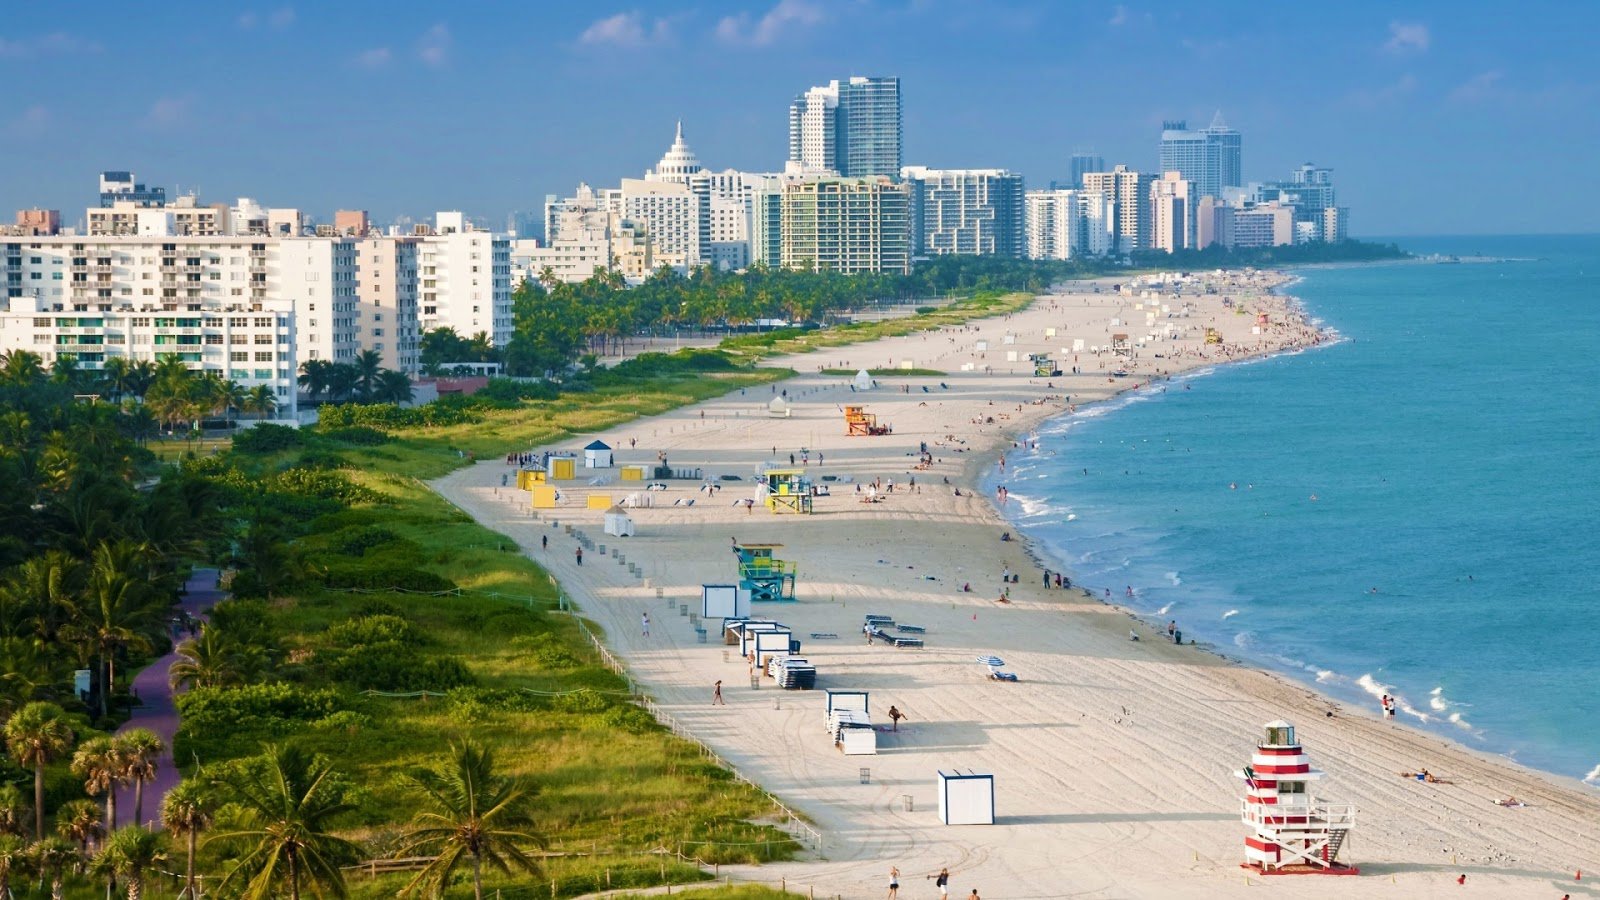 Miami Beach Full HD Desktop Wallpapers 1080p